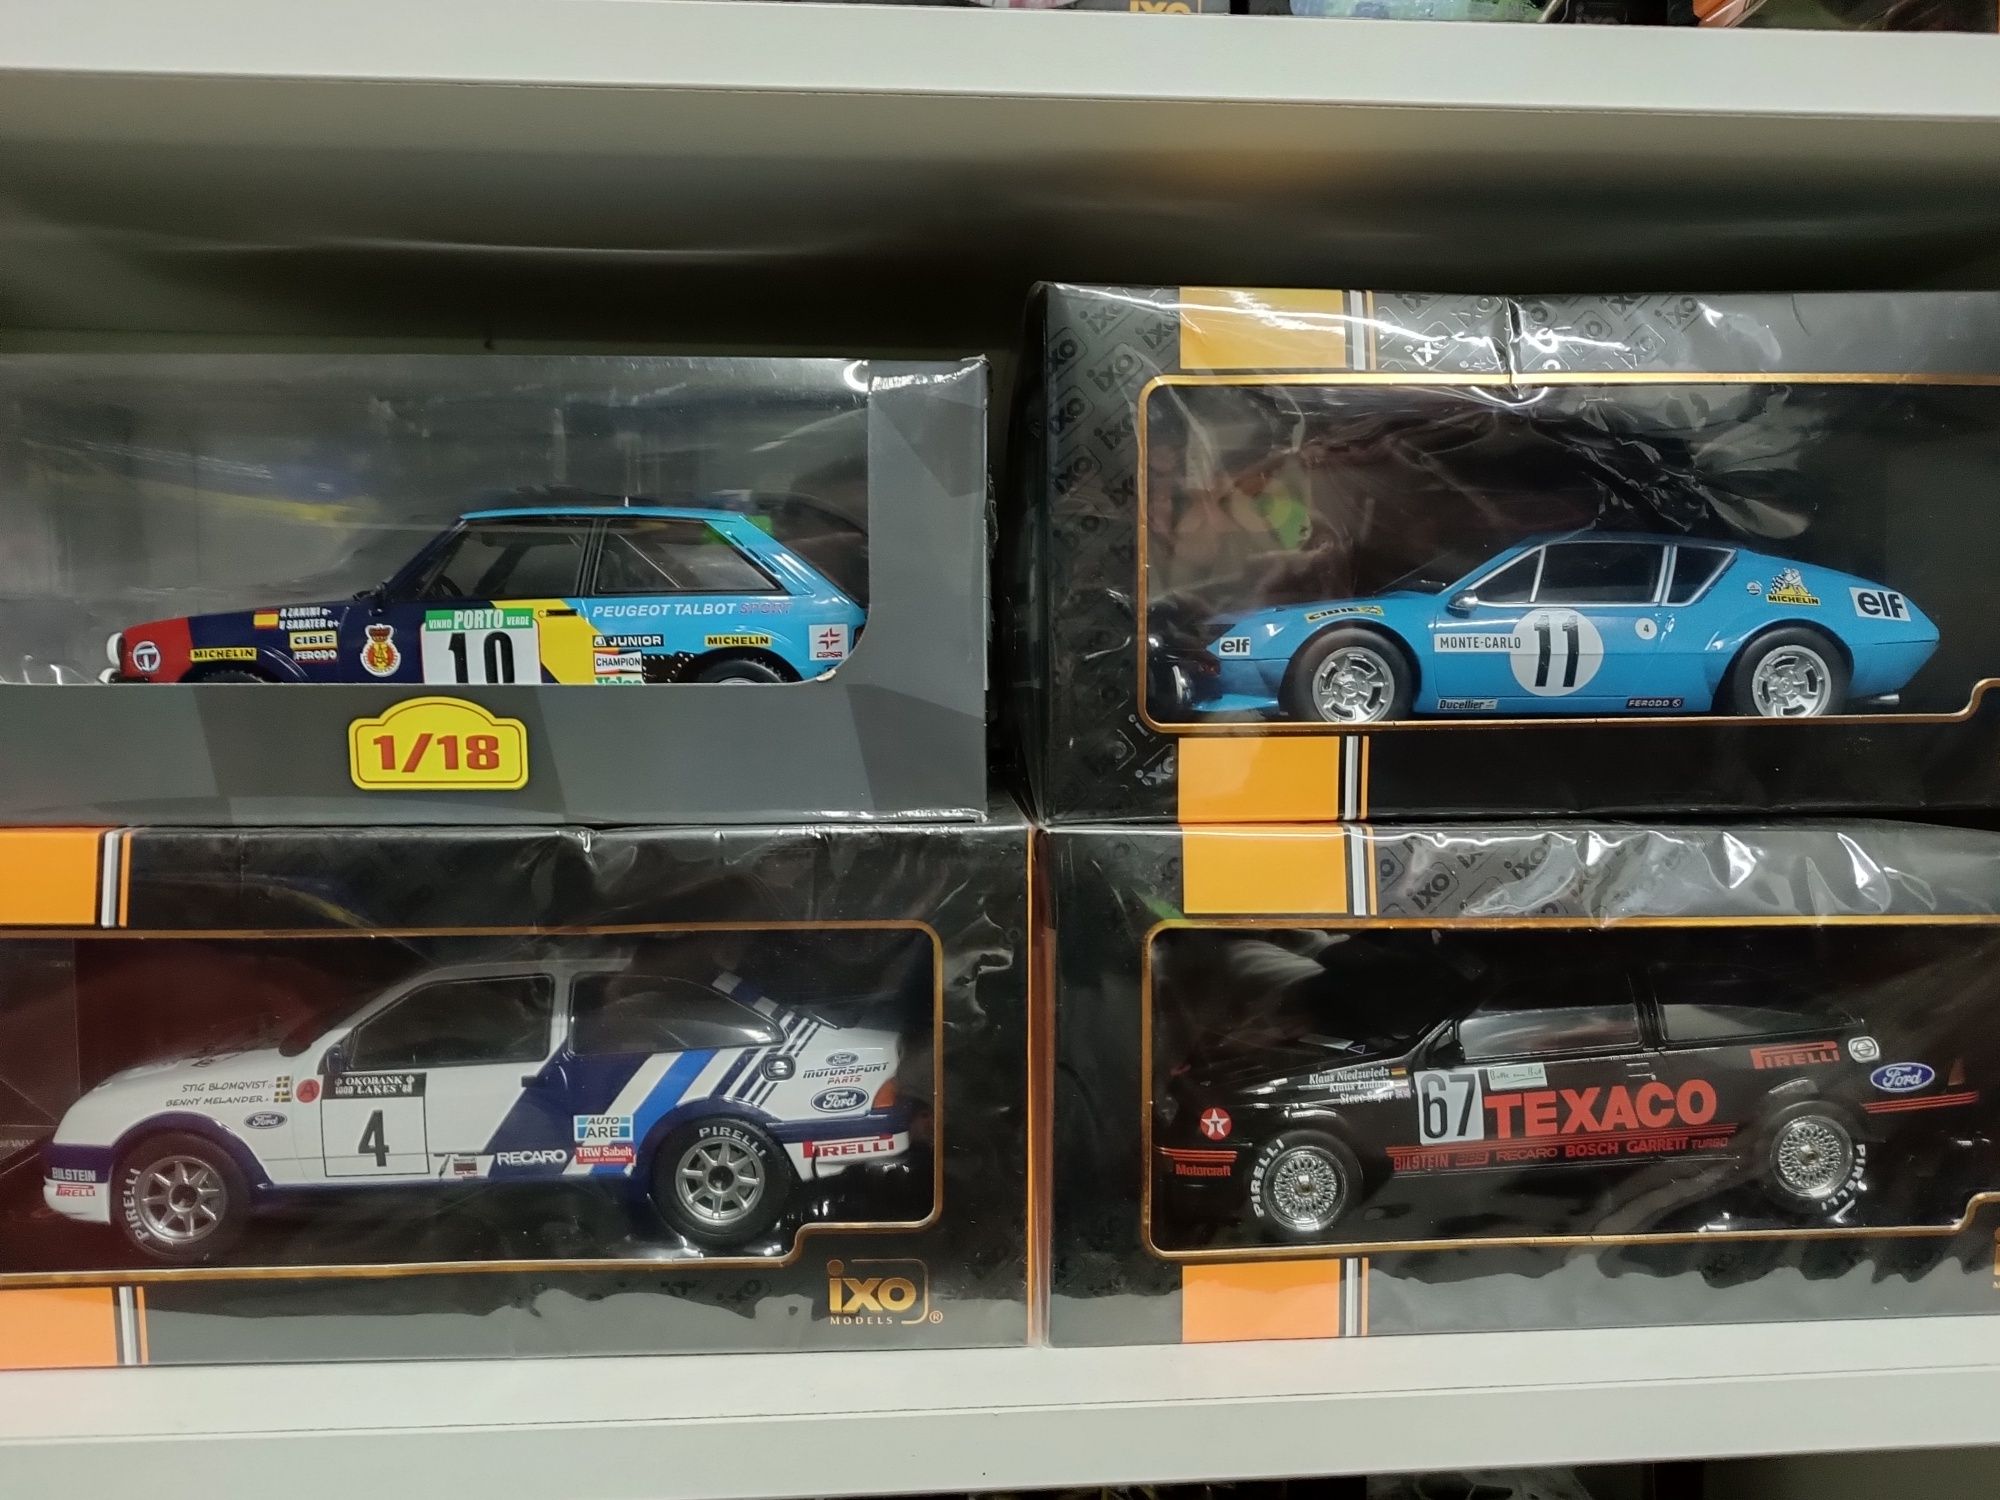 Miniaturas Rally e Le Mans 1/18 IXO e altaya